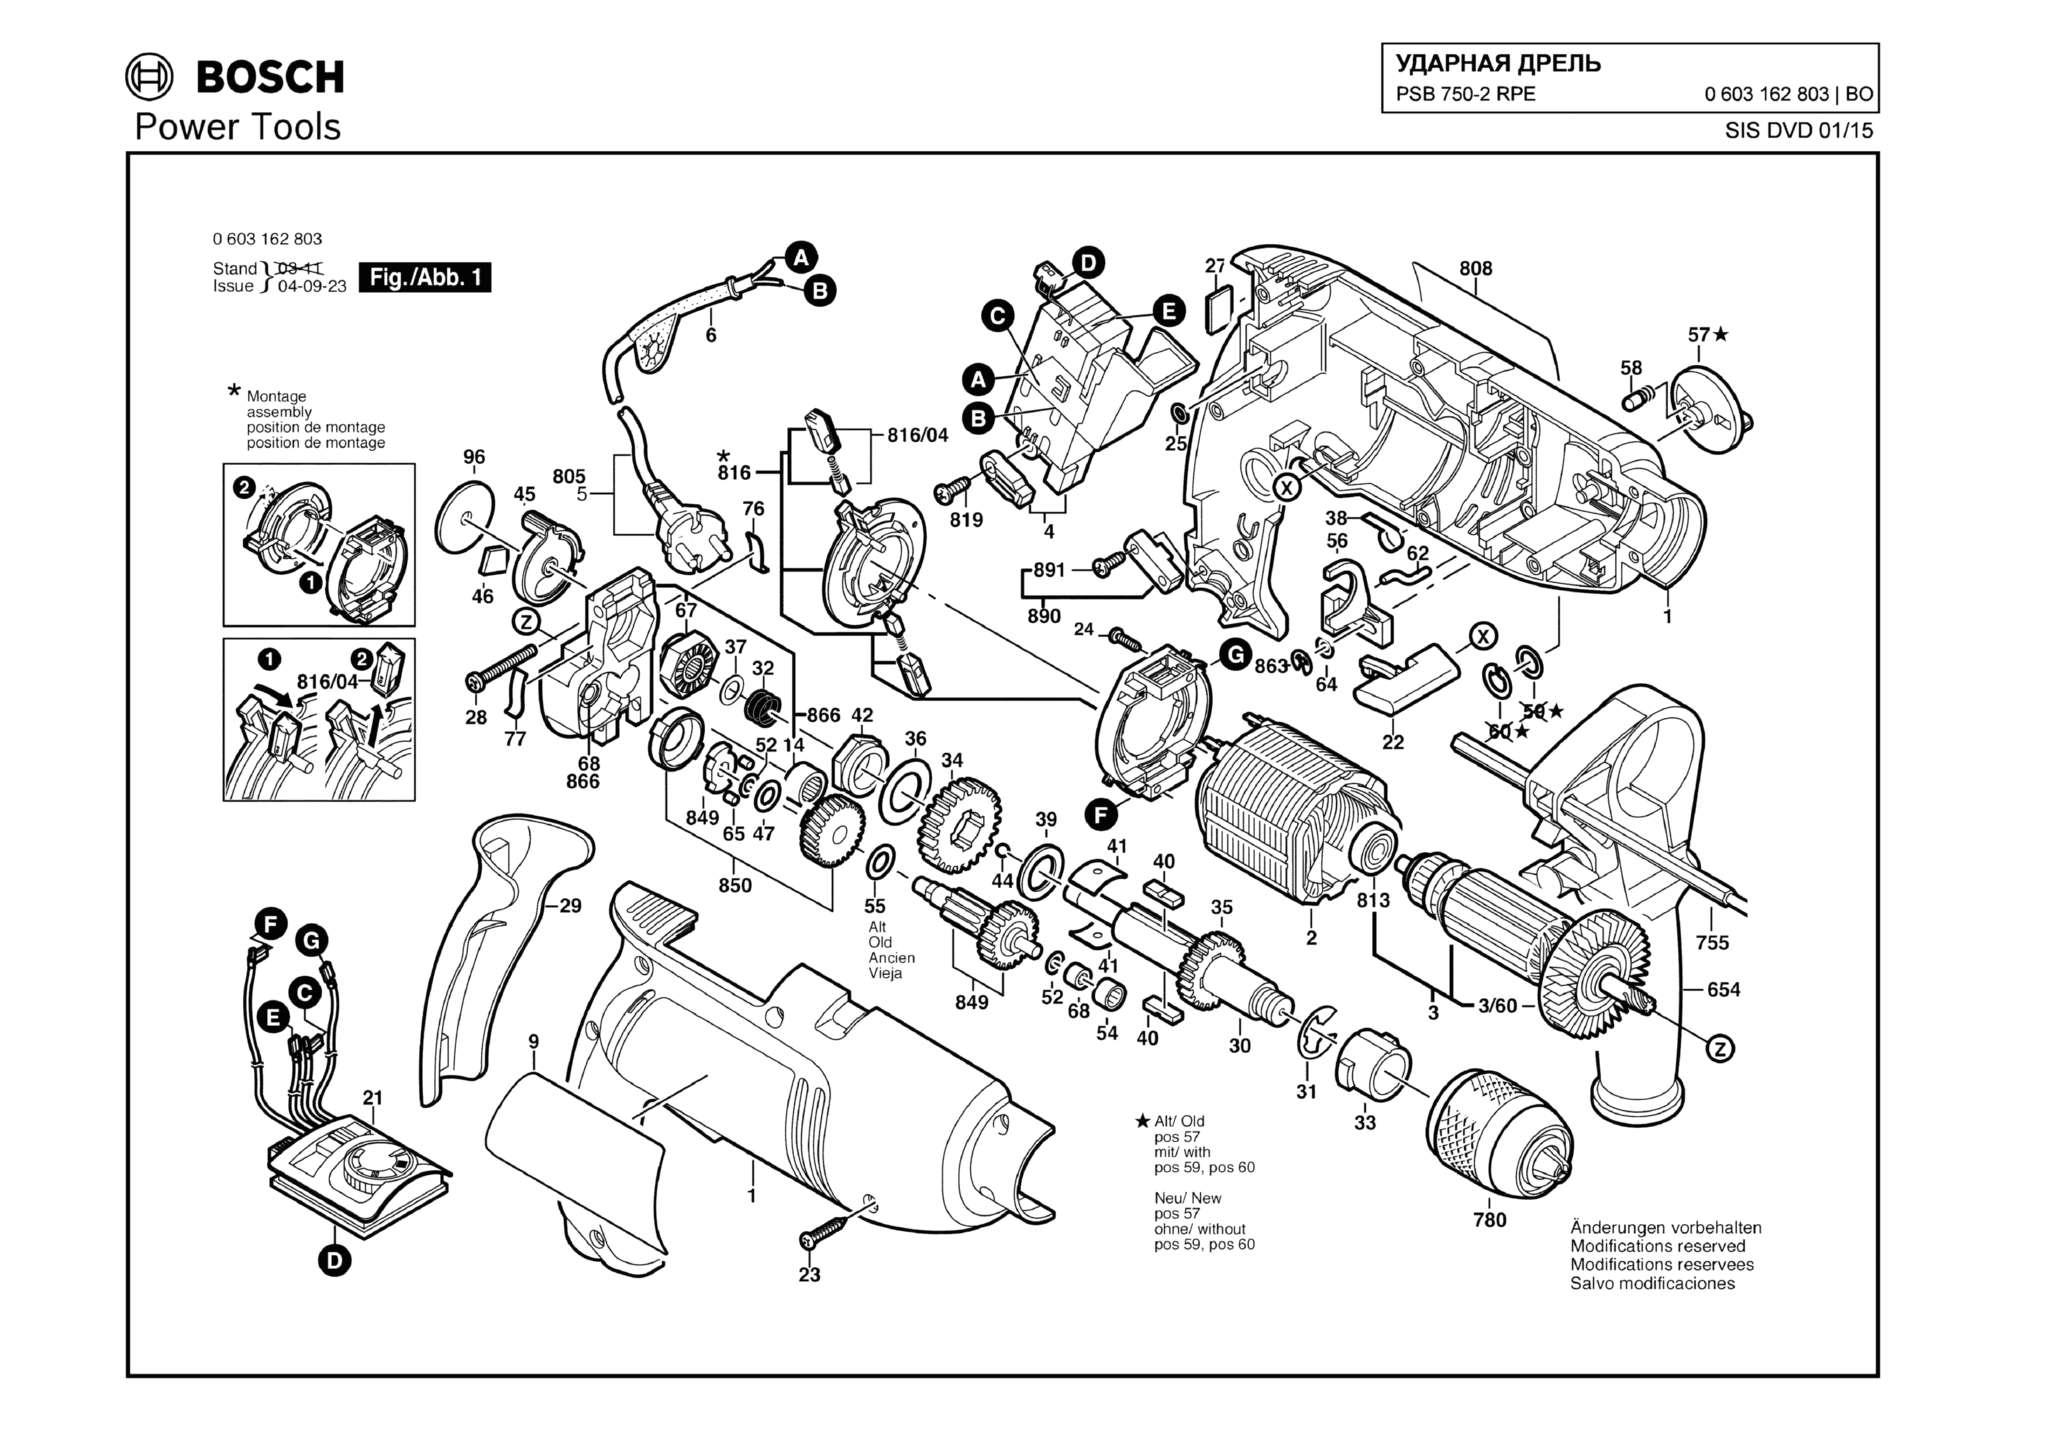 Запчасти, схема и деталировка Bosch PSB 750-2 RPE (ТИП 0603162803)